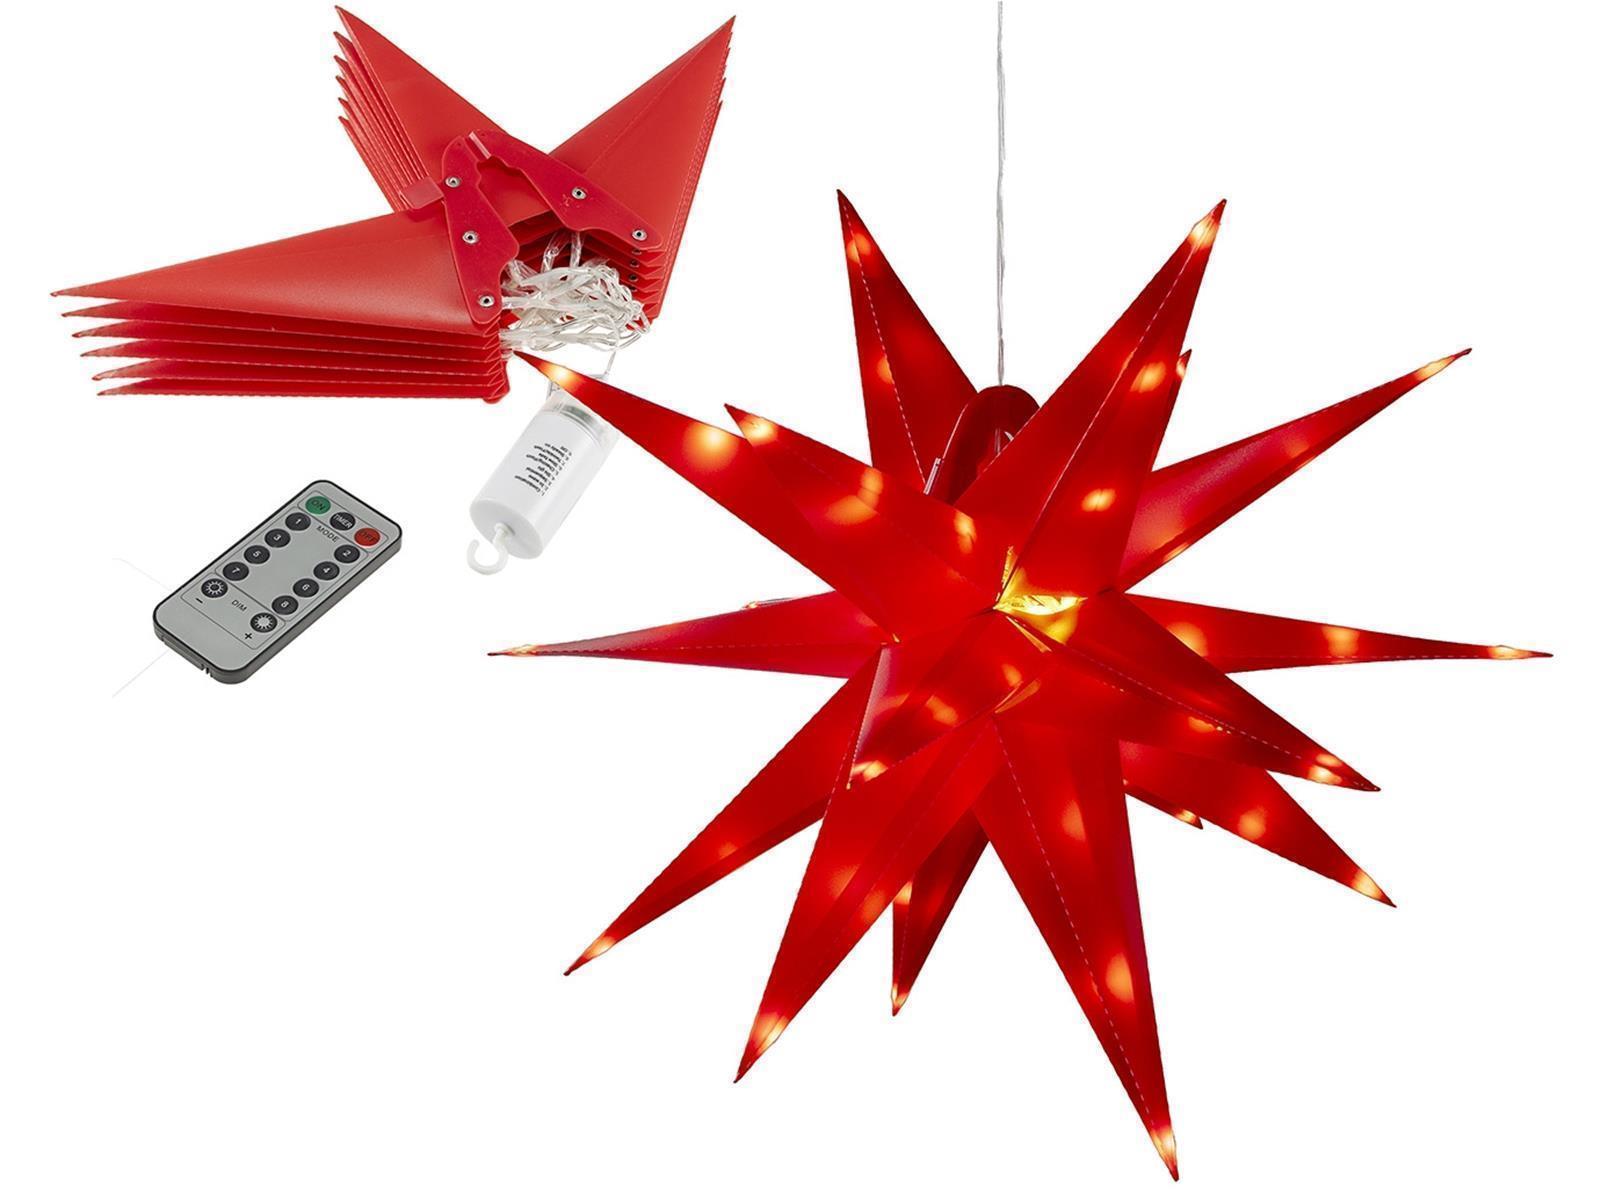 Großer 3D Weihnachtsstern rot, 56cm72 warmweiße LEDs, Batteriebetrieb